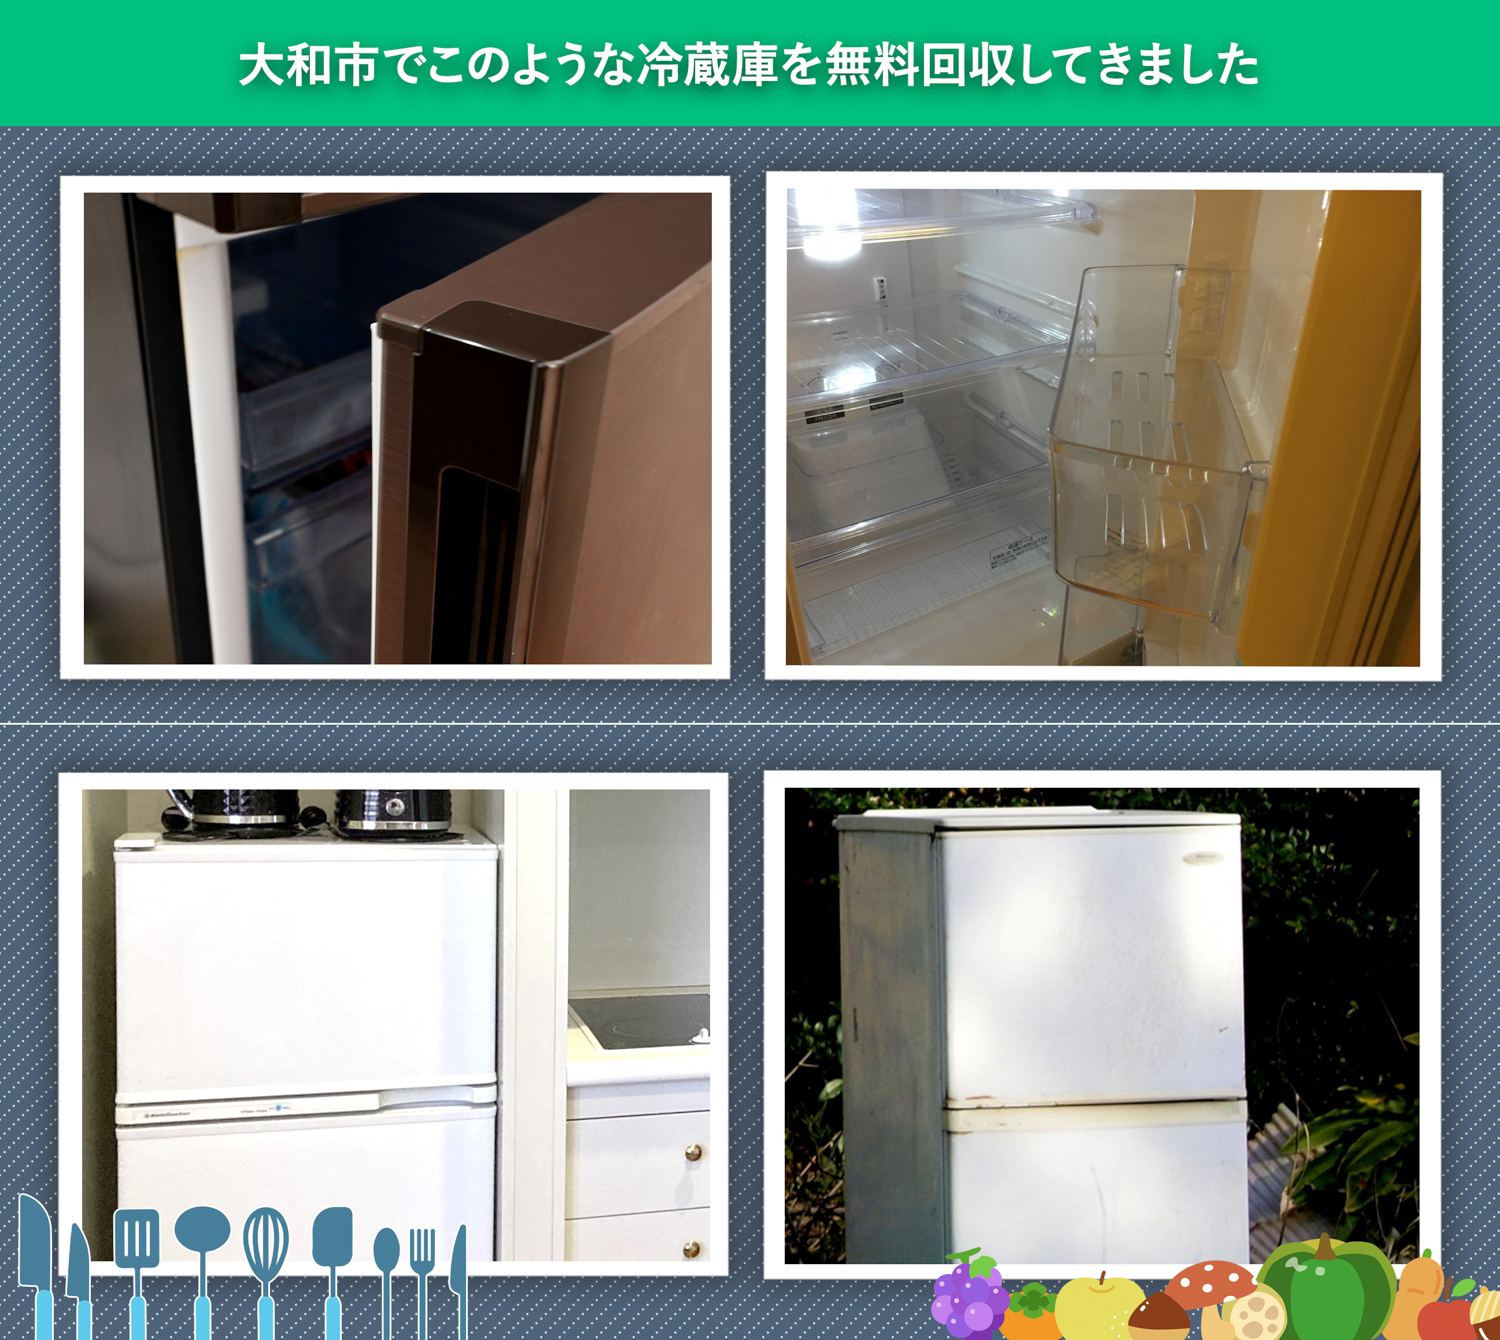 大和市でこのような冷蔵庫を無料回収してきました。